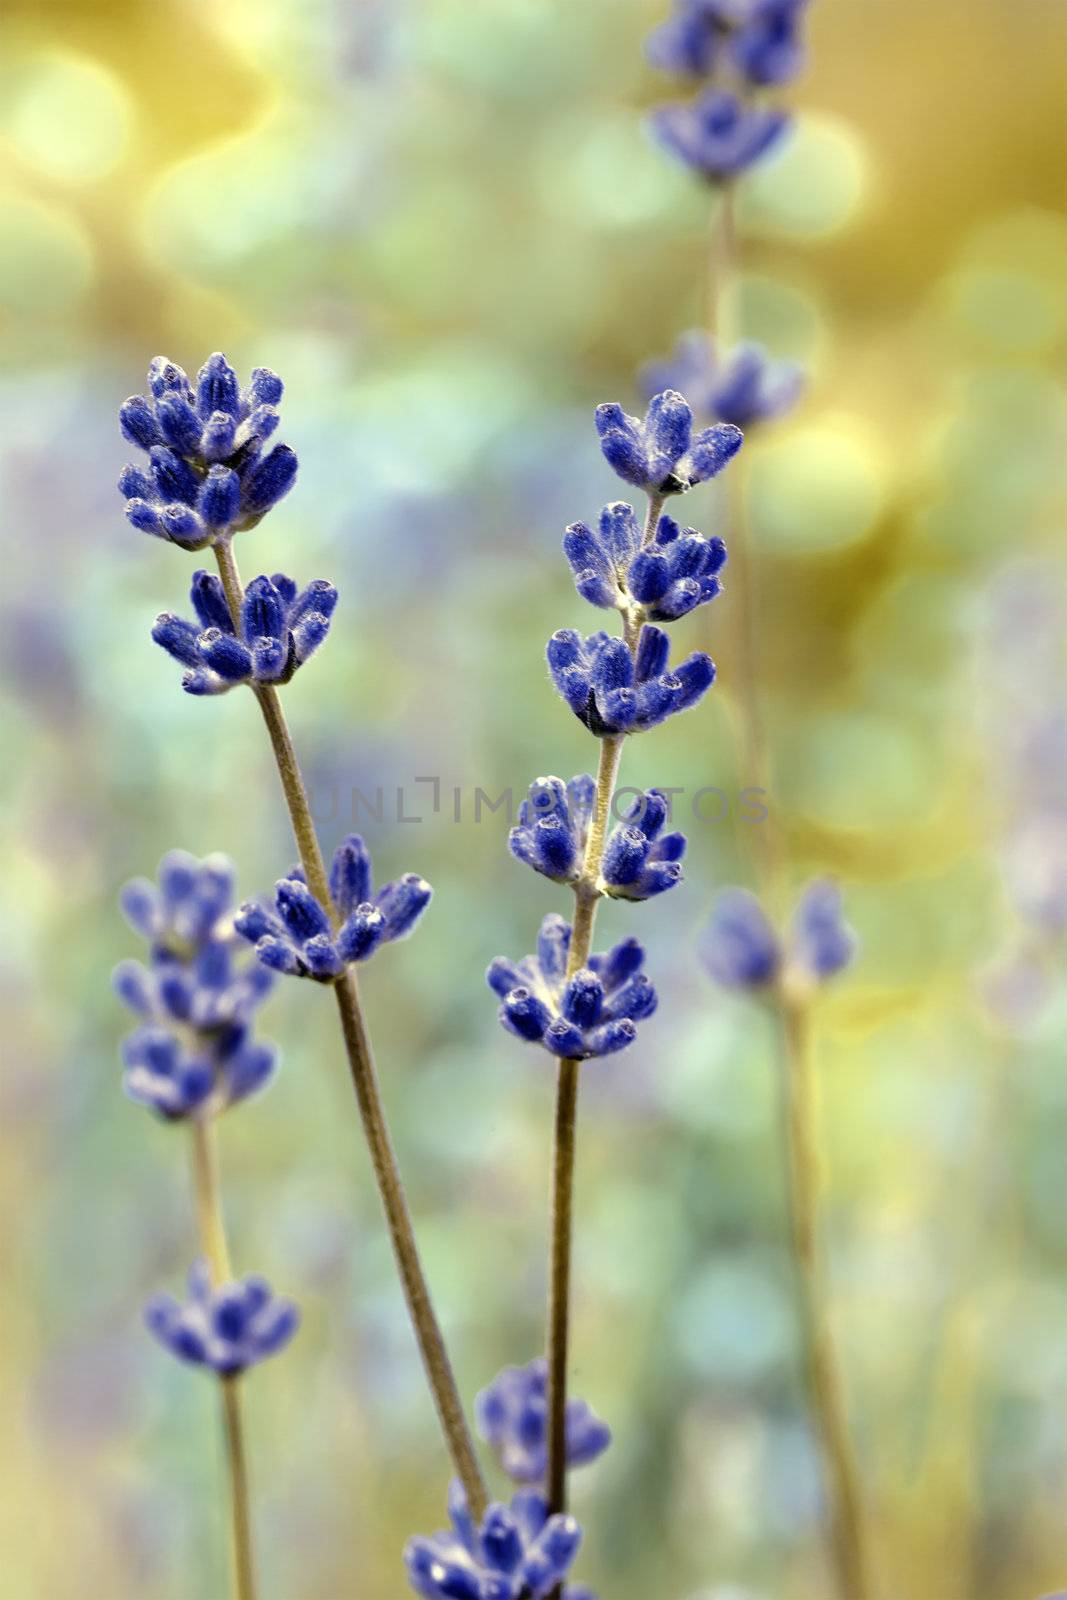 Lavender flower field, macro with soft focus by motorolka